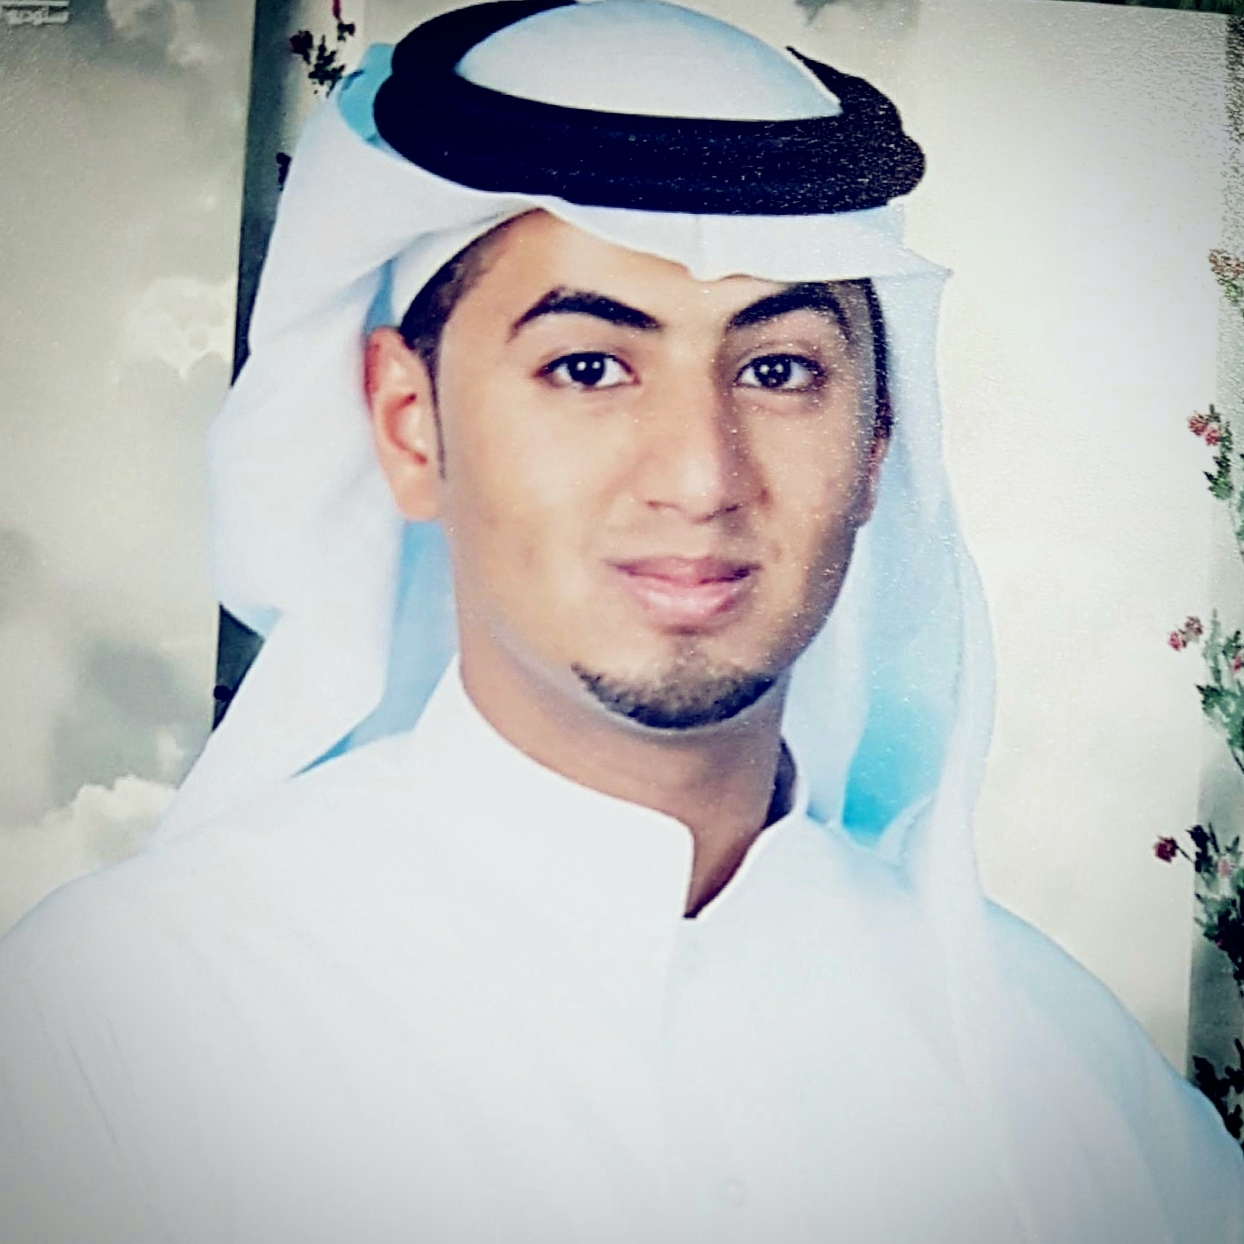 student 201348290 حسن بن محمد بن حسن الشقاقيق picture